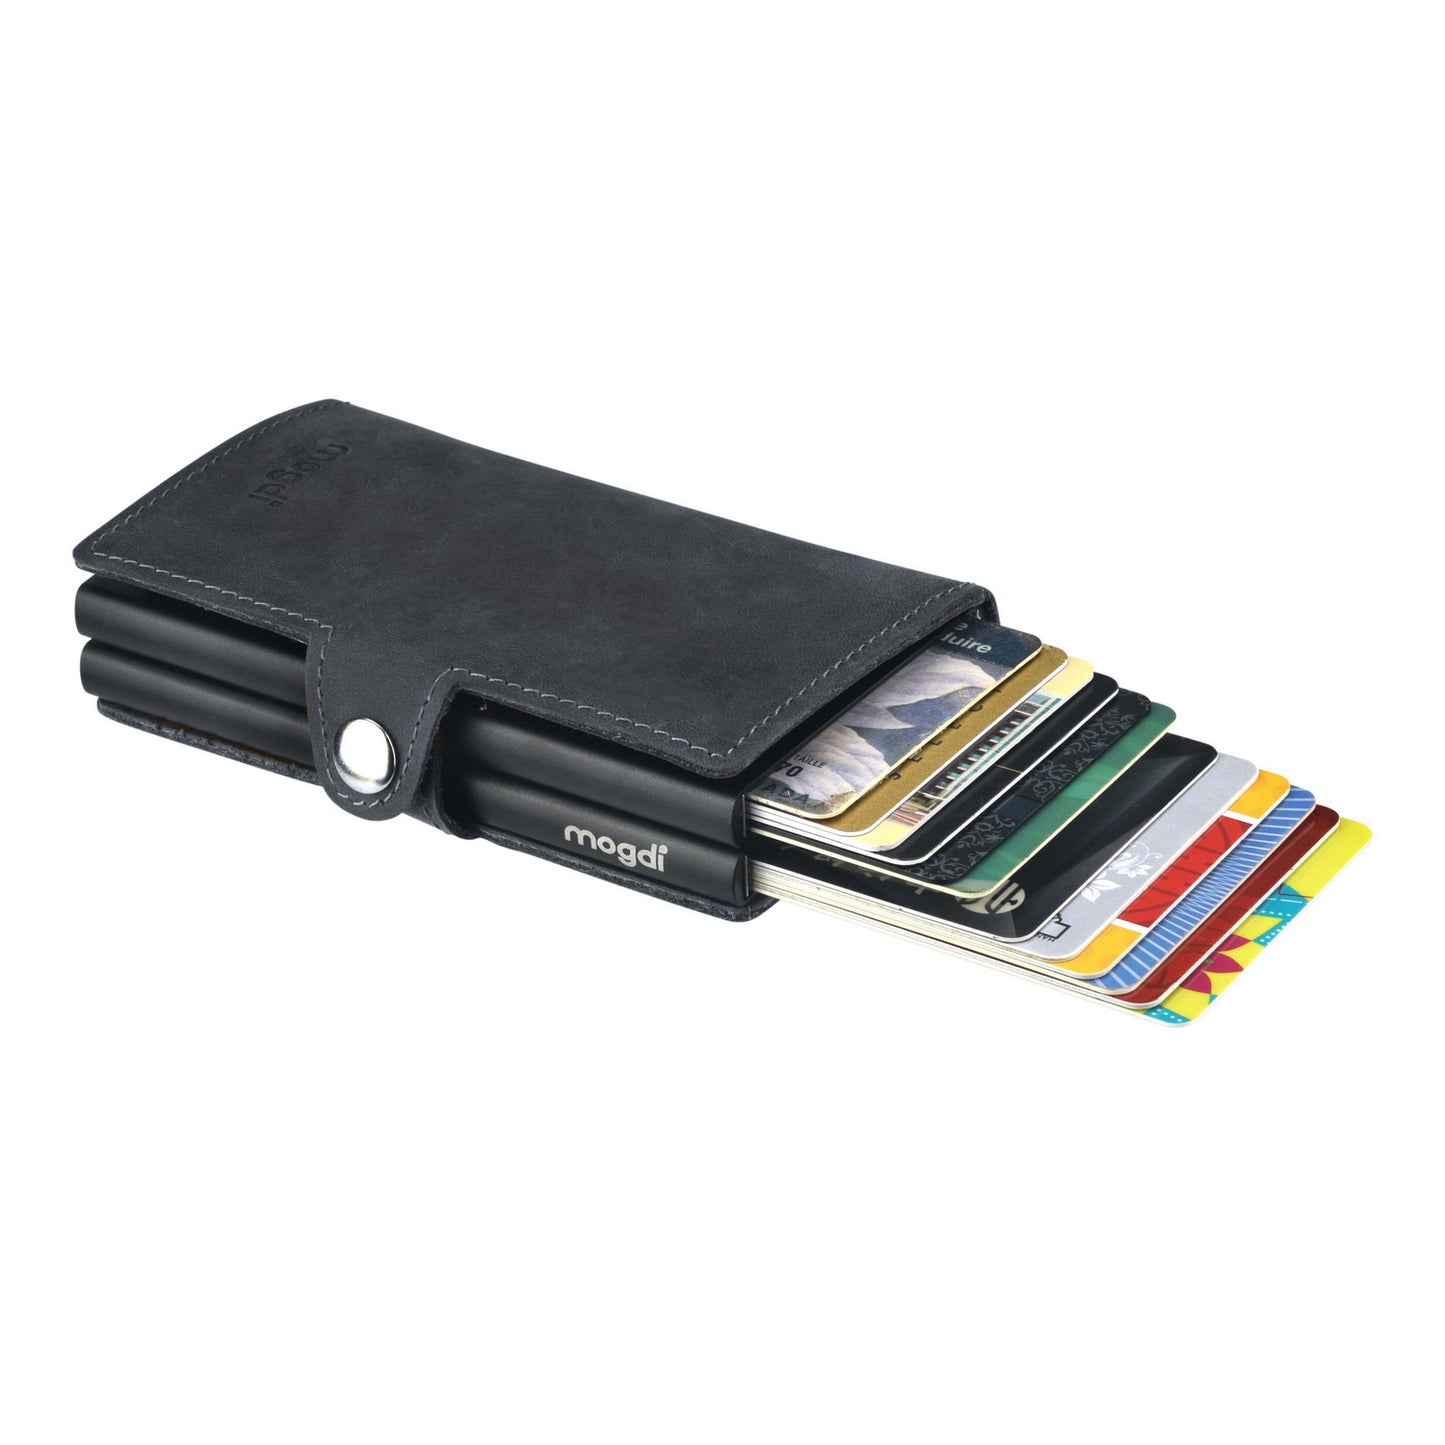 PREMIUM duo Brieftasche Vintage Leder Portmonee RFID Blocker Kreditkarten Schutz für 12 Karten XXL